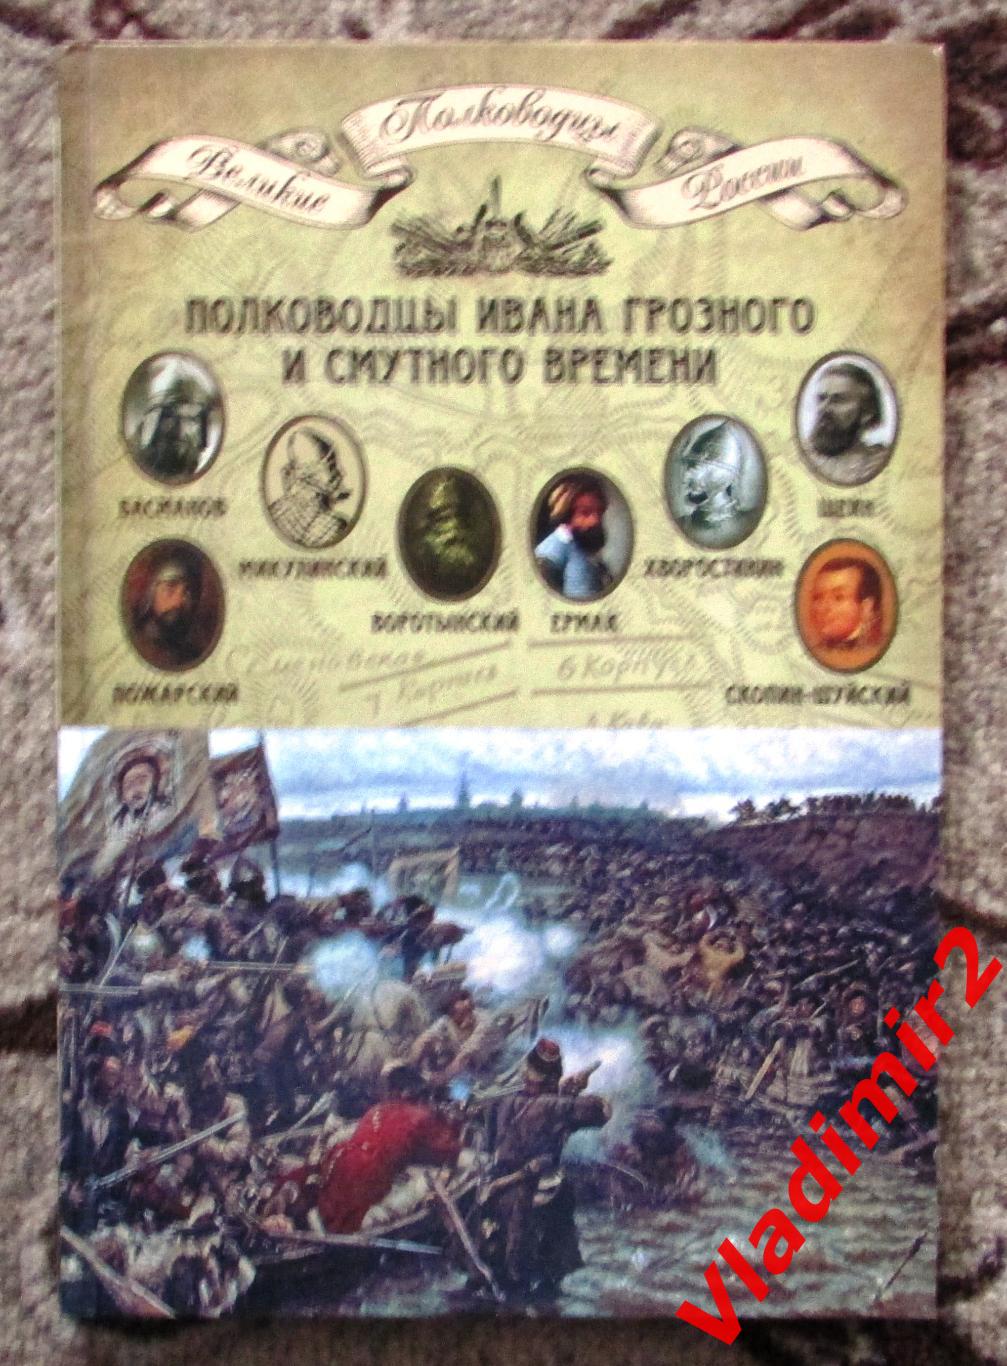 Полководцы Ивана Грозного и Смутного времени